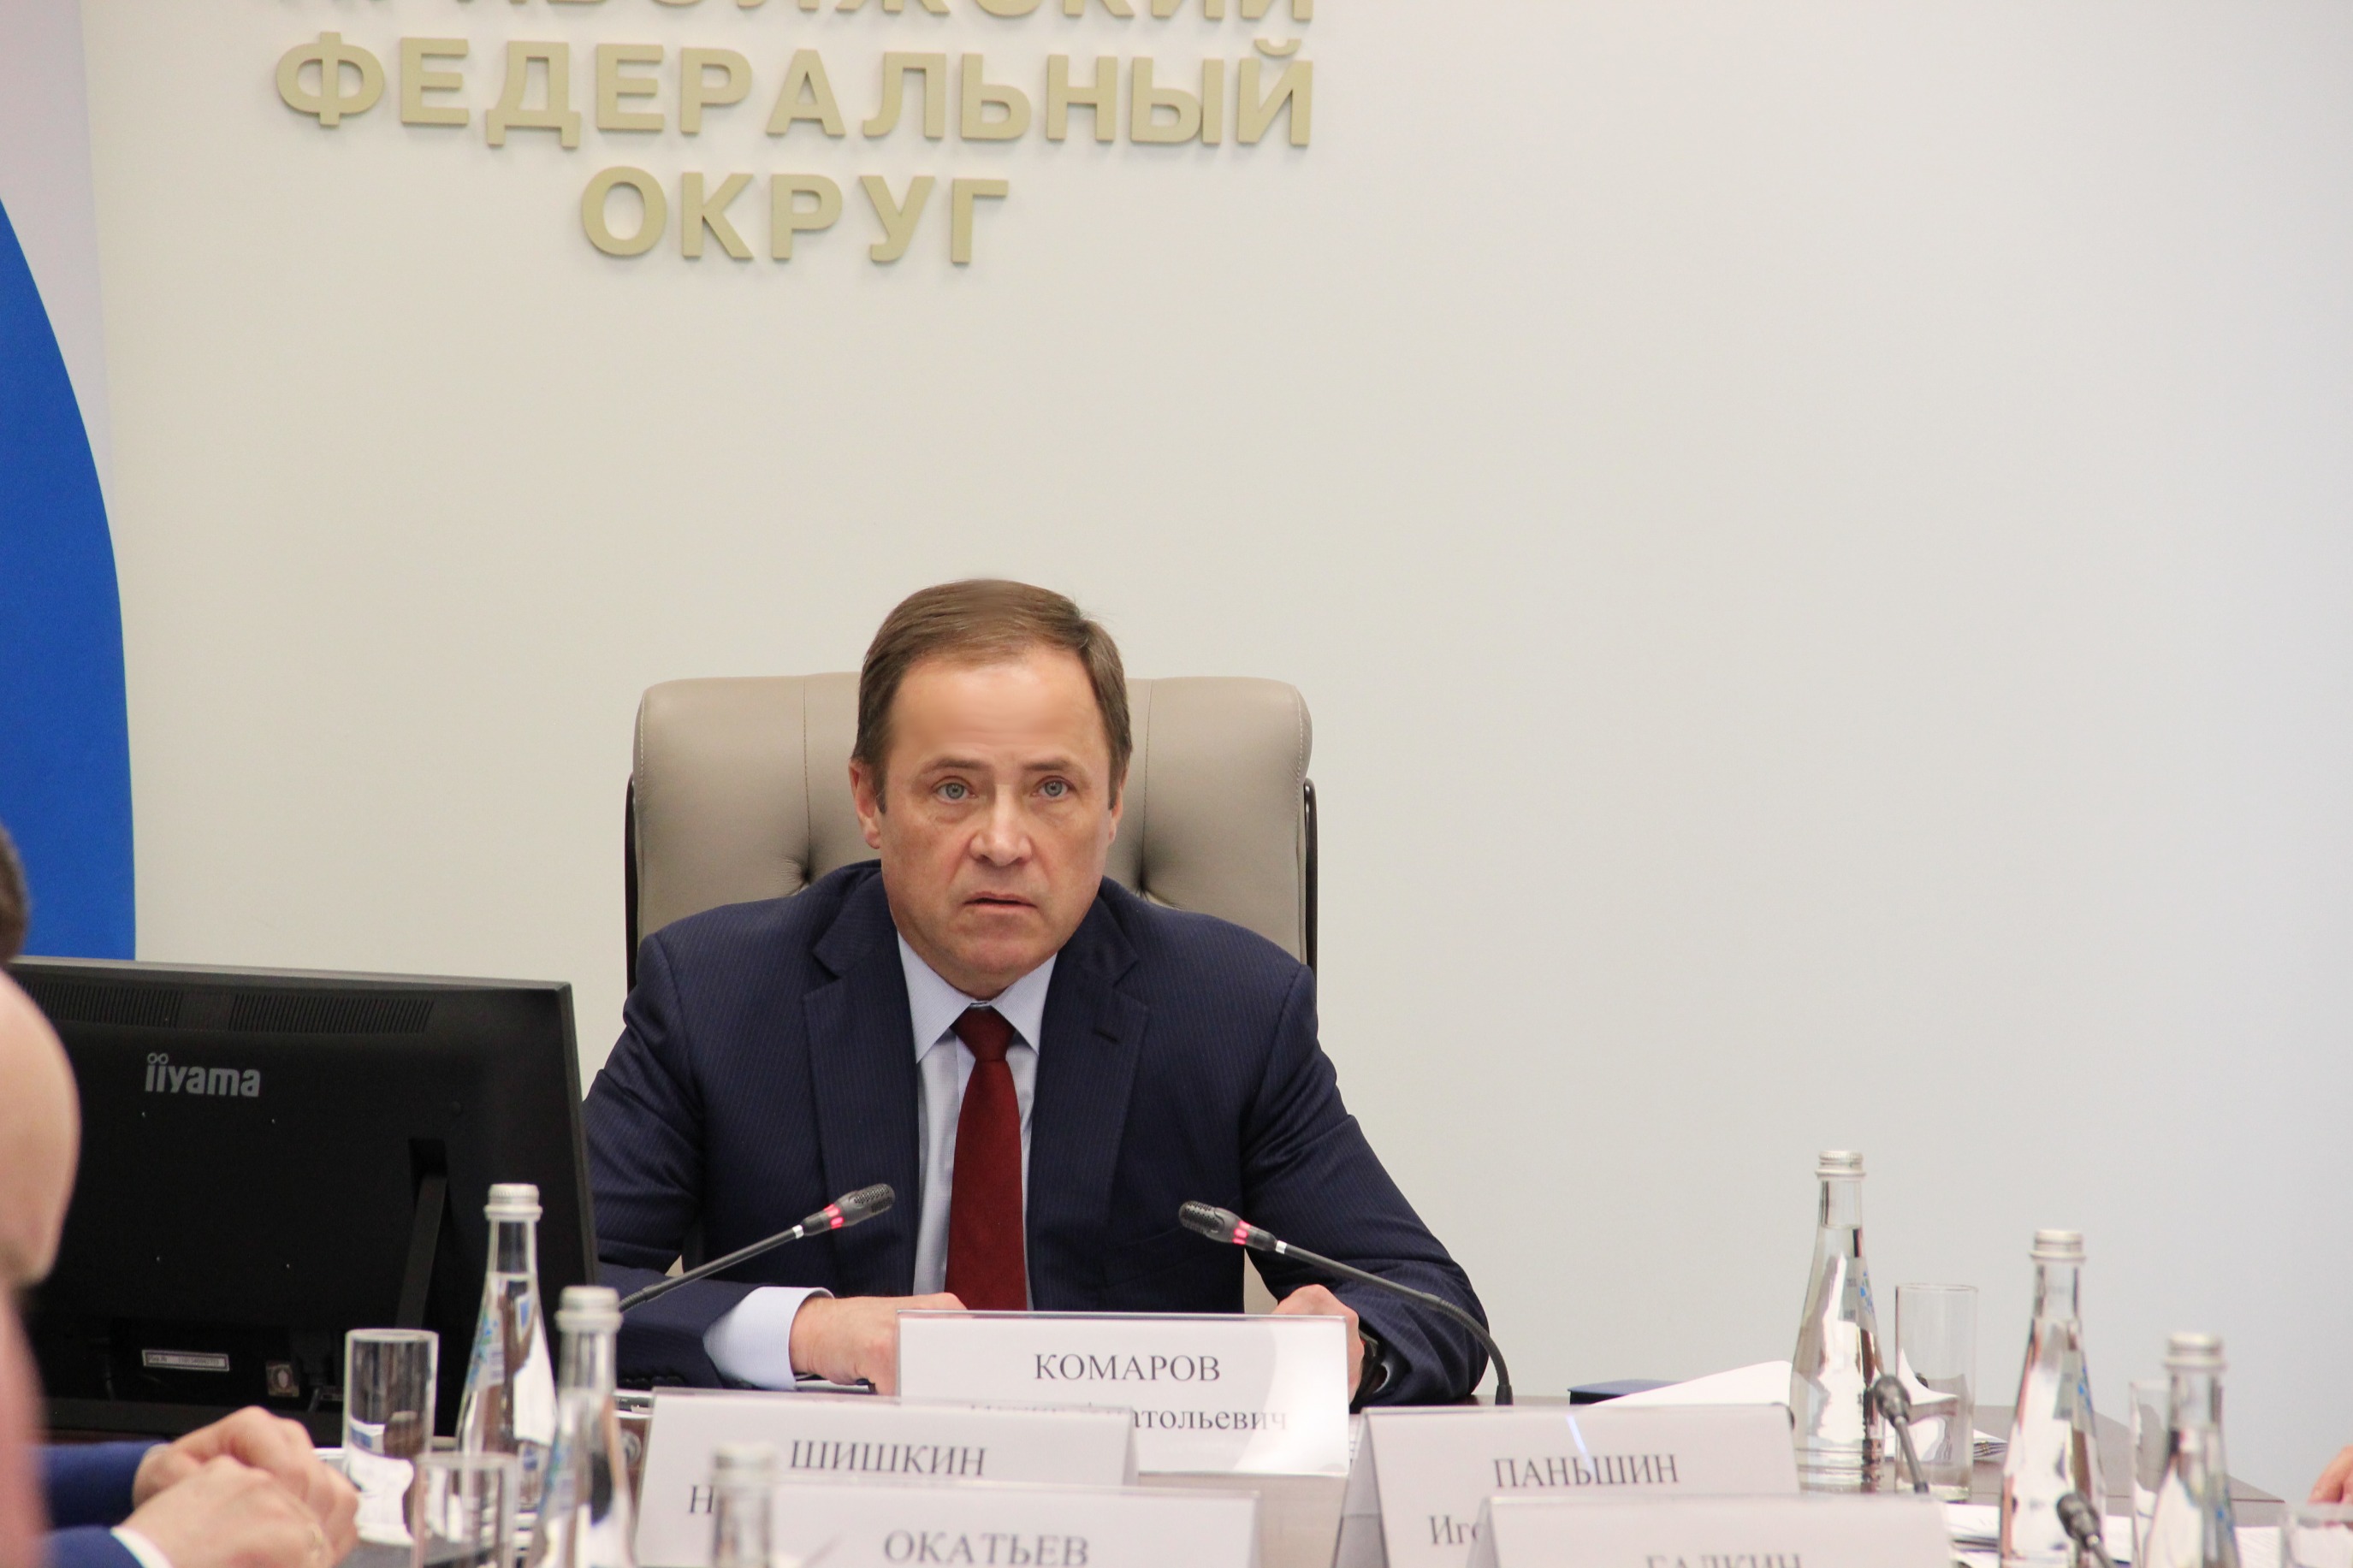 Состоялось заседание Коллегии по вопросам безопасности при полномочном представителе Президента РФ в ПФО.